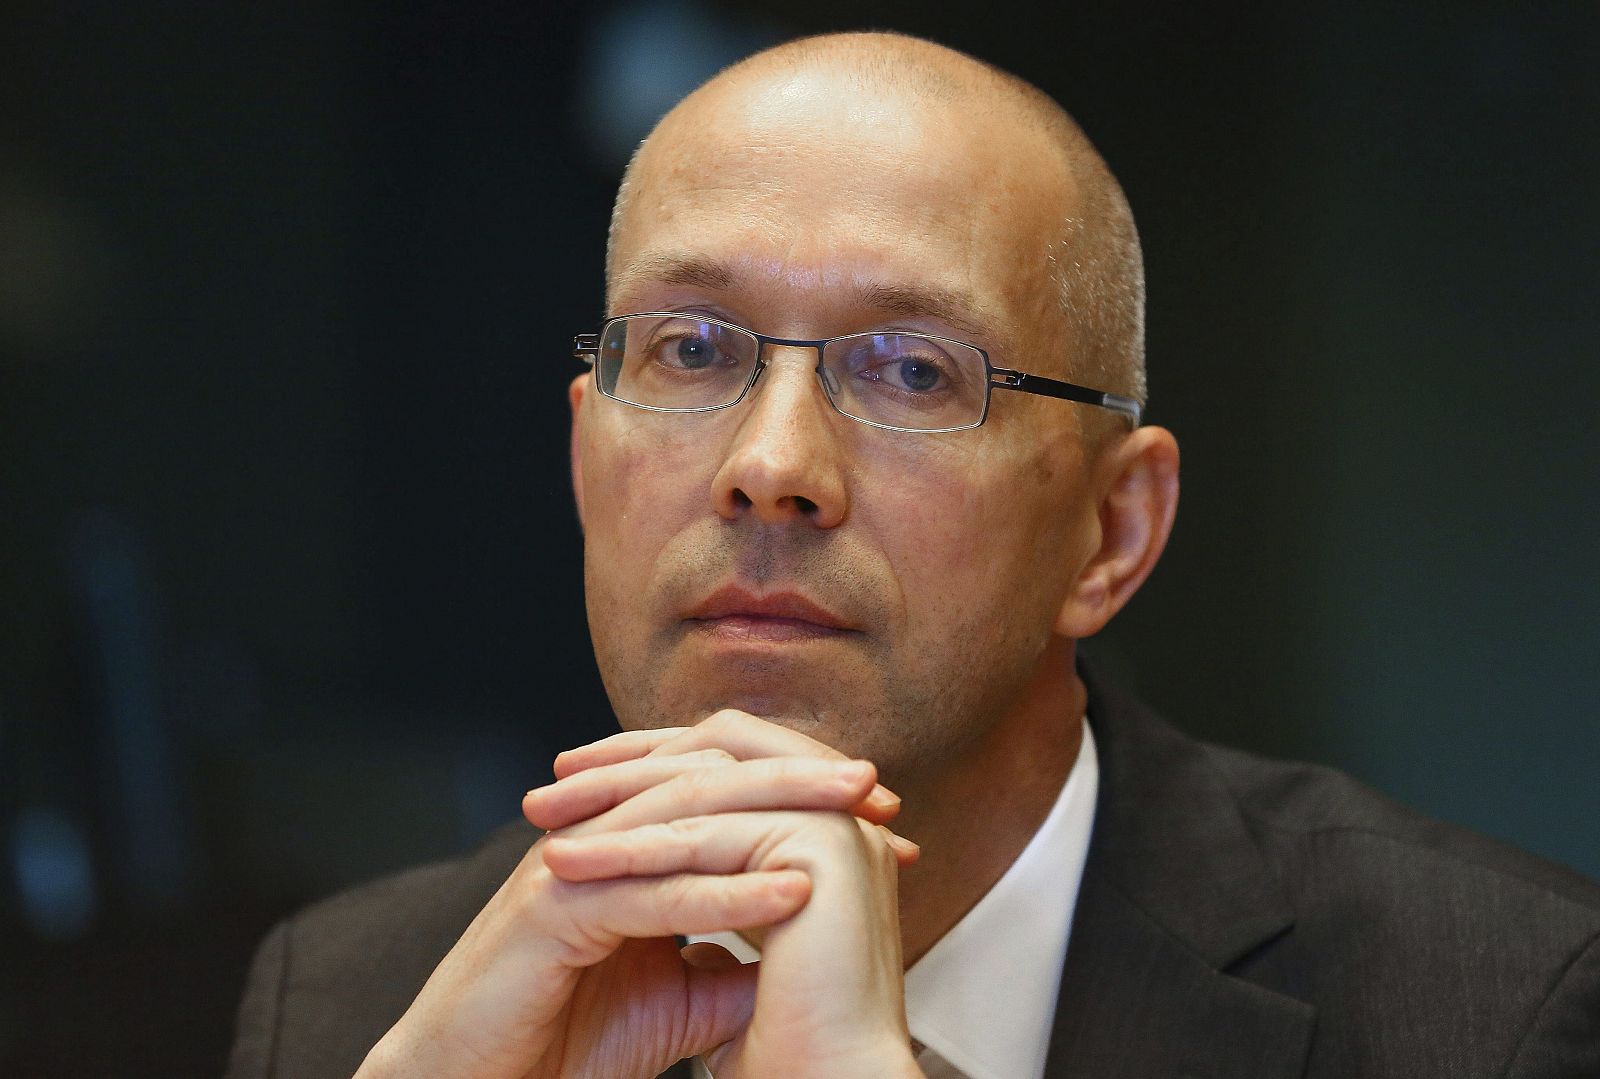 El miembro del Consejo Ejecutivo del Banco Central Europeo Jörg Asmussen